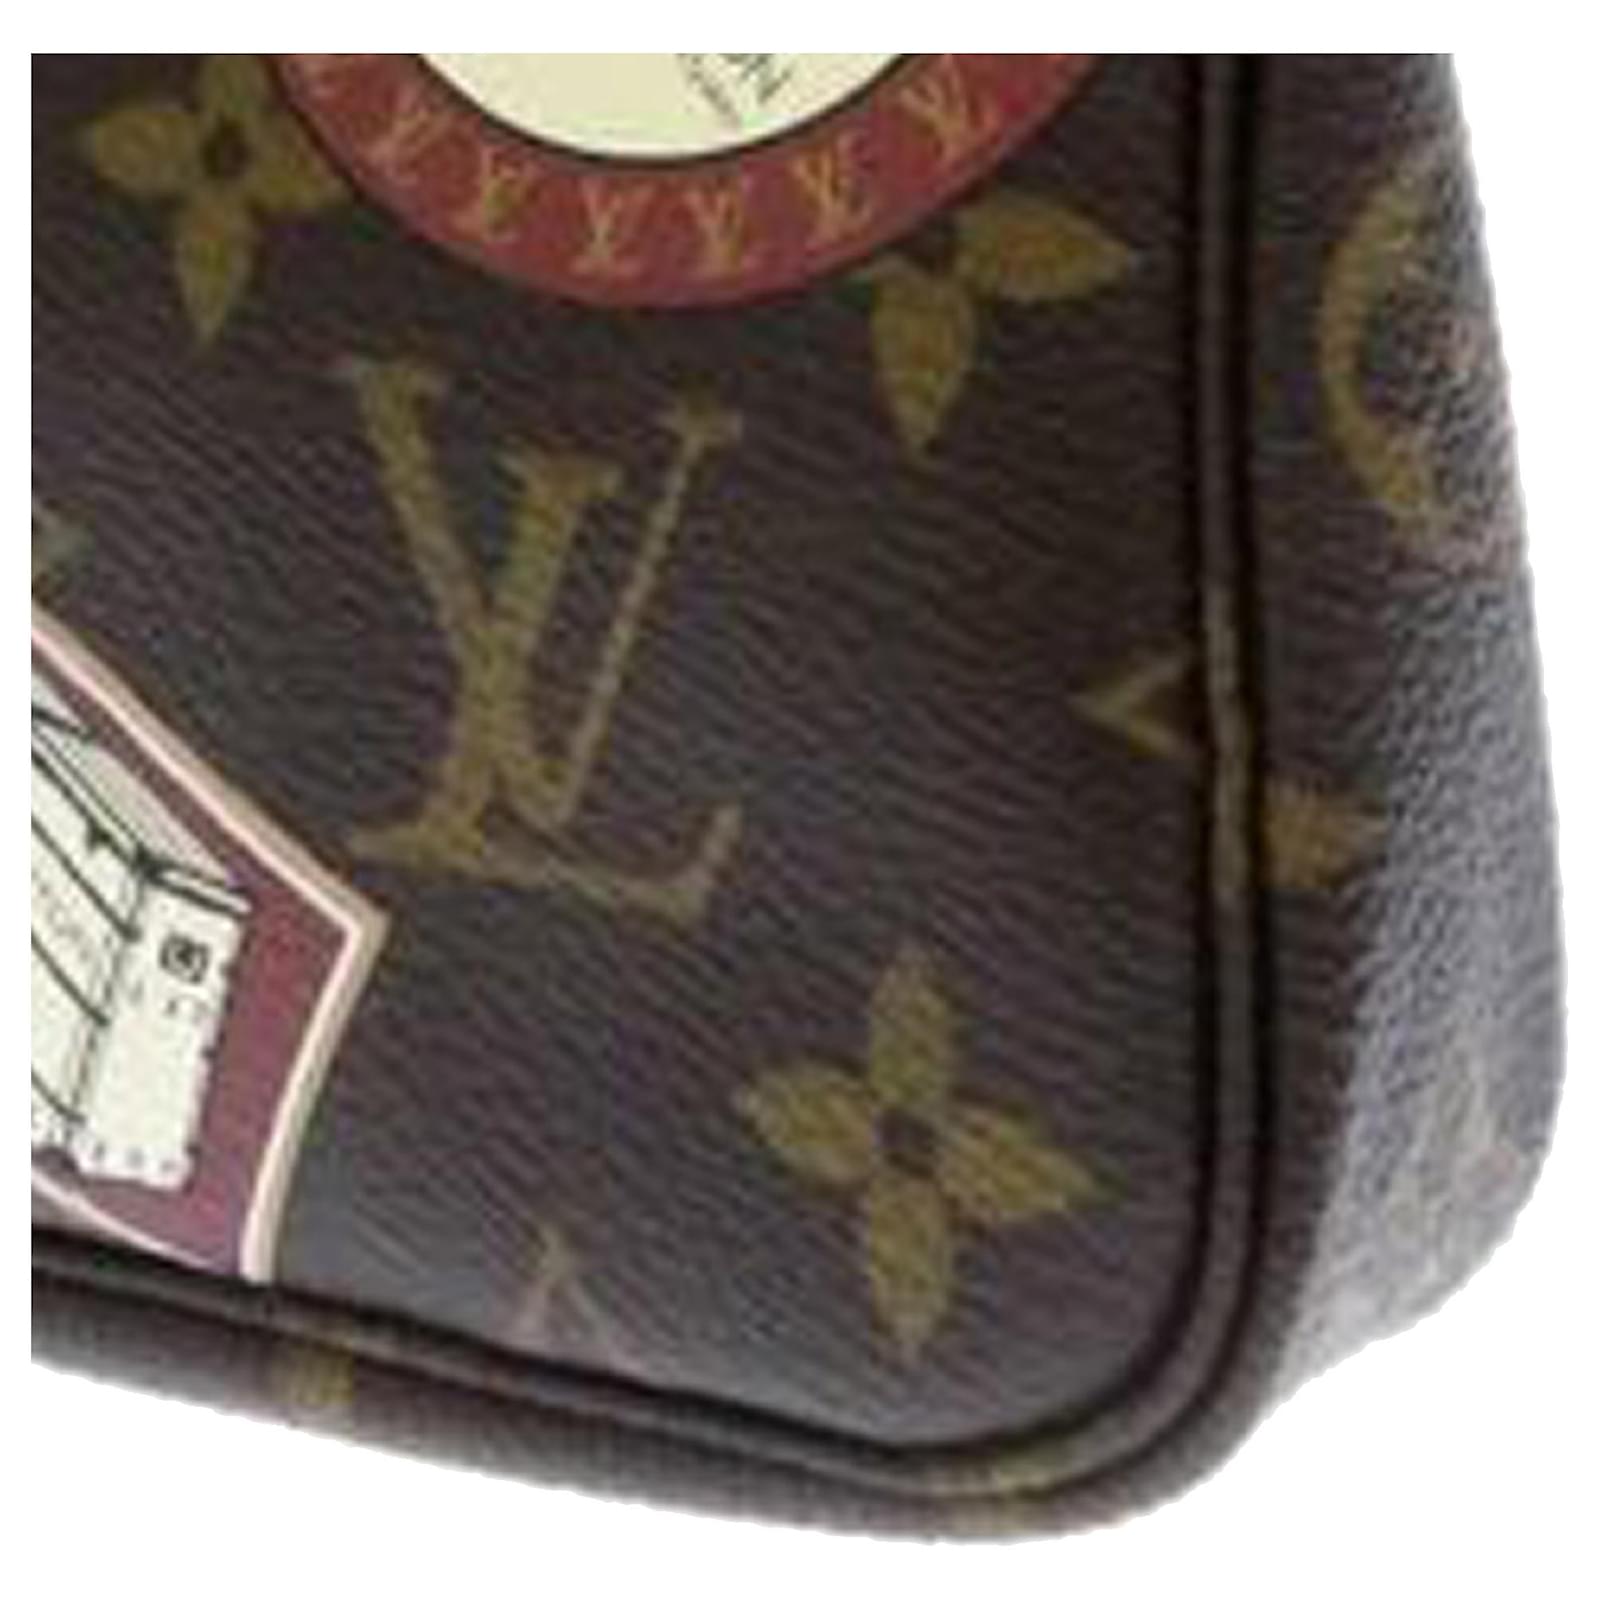 Louis Vuitton Monogram Canvas Mini Pochette Accessoires' In Brown, ModeSens